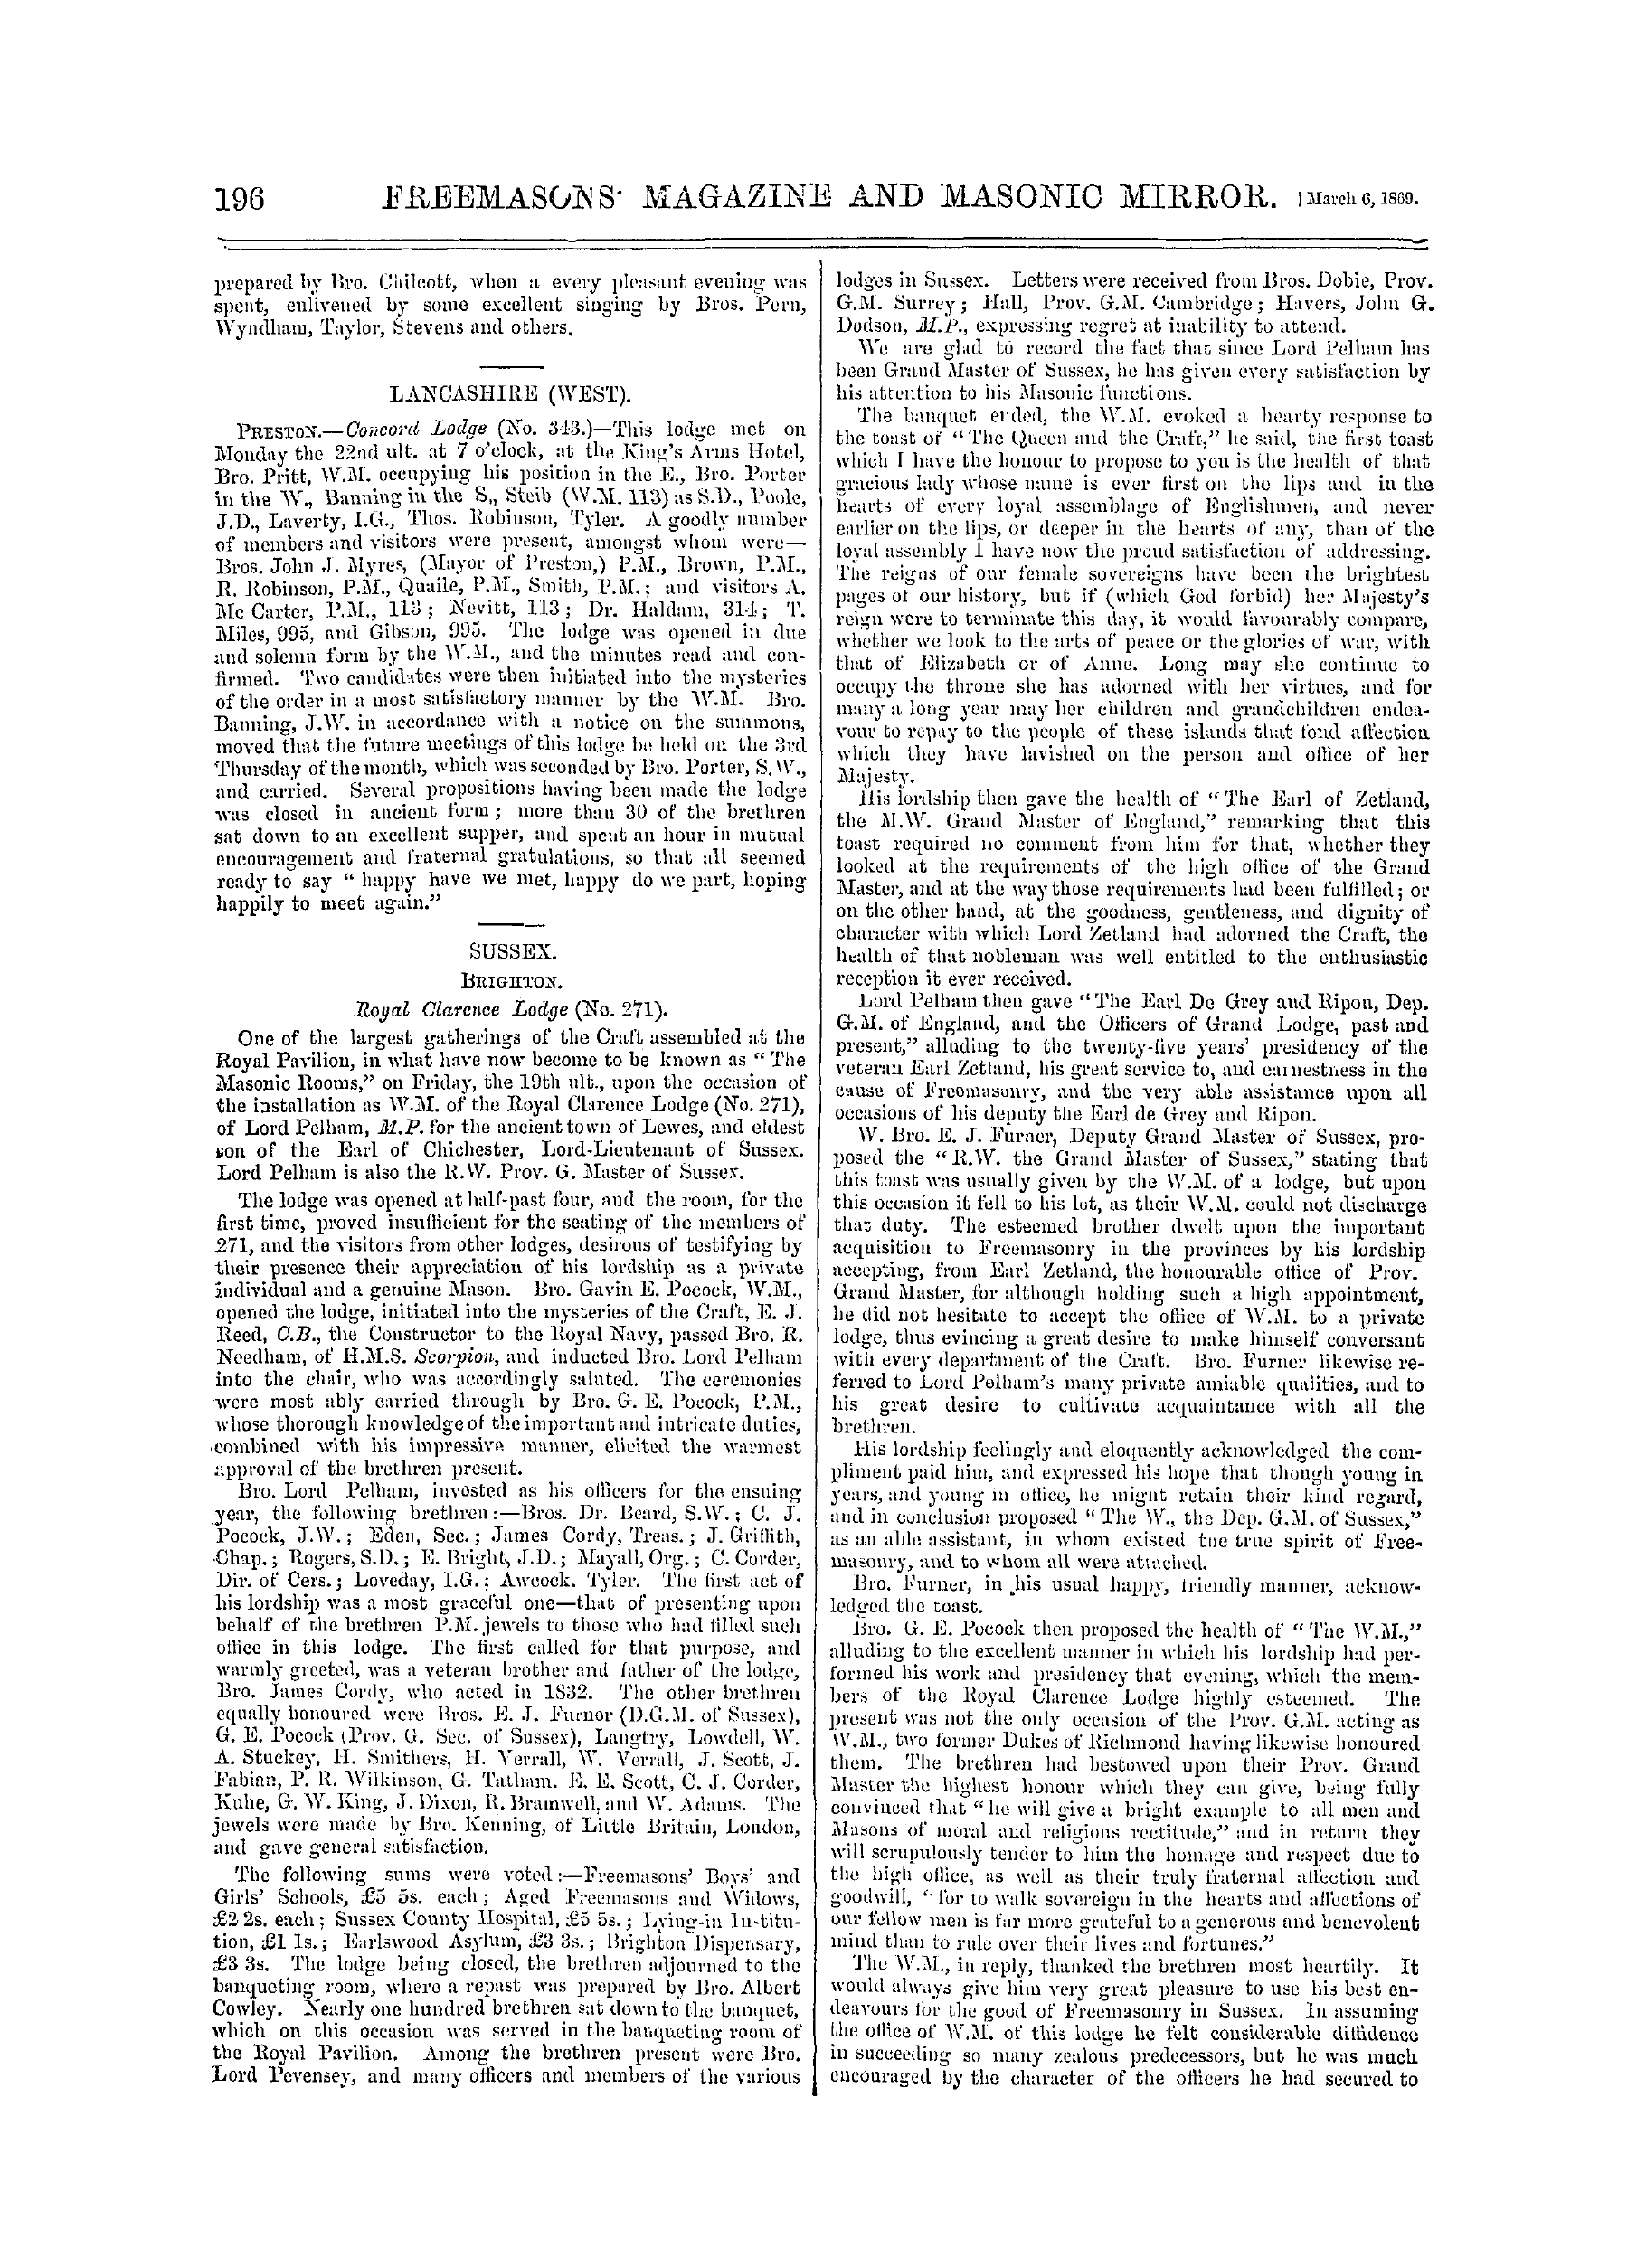 The Freemasons' Monthly Magazine: 1869-03-06: 16